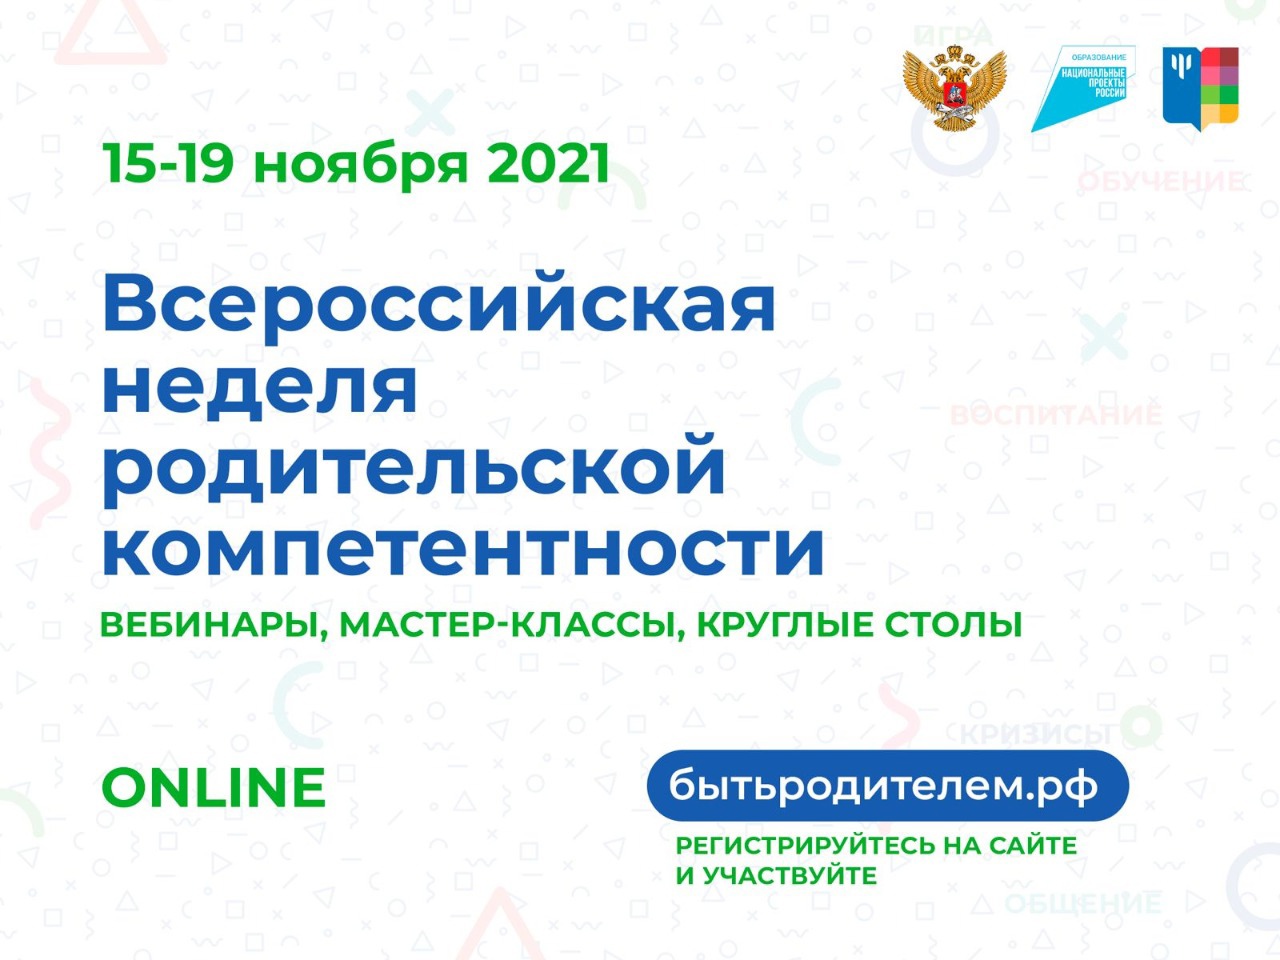 Всероссийская неделя родительской компетентности с 15 по 19 ноября 2021 года